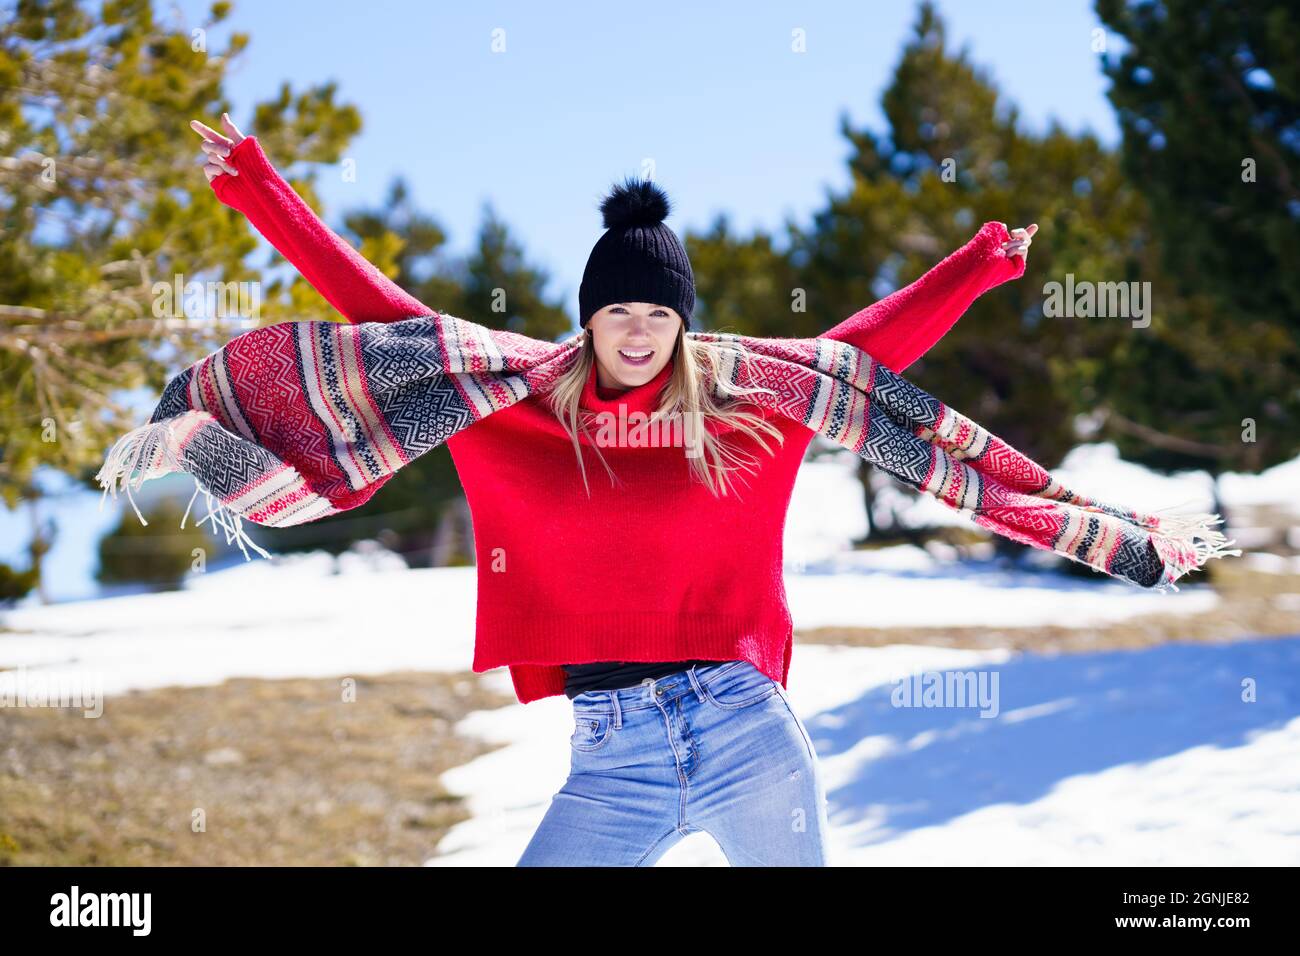 Junge glückliche junge blonde Frau winkt ihren Schal im Wind in einem Wald in den verschneiten Bergen. Stockfoto